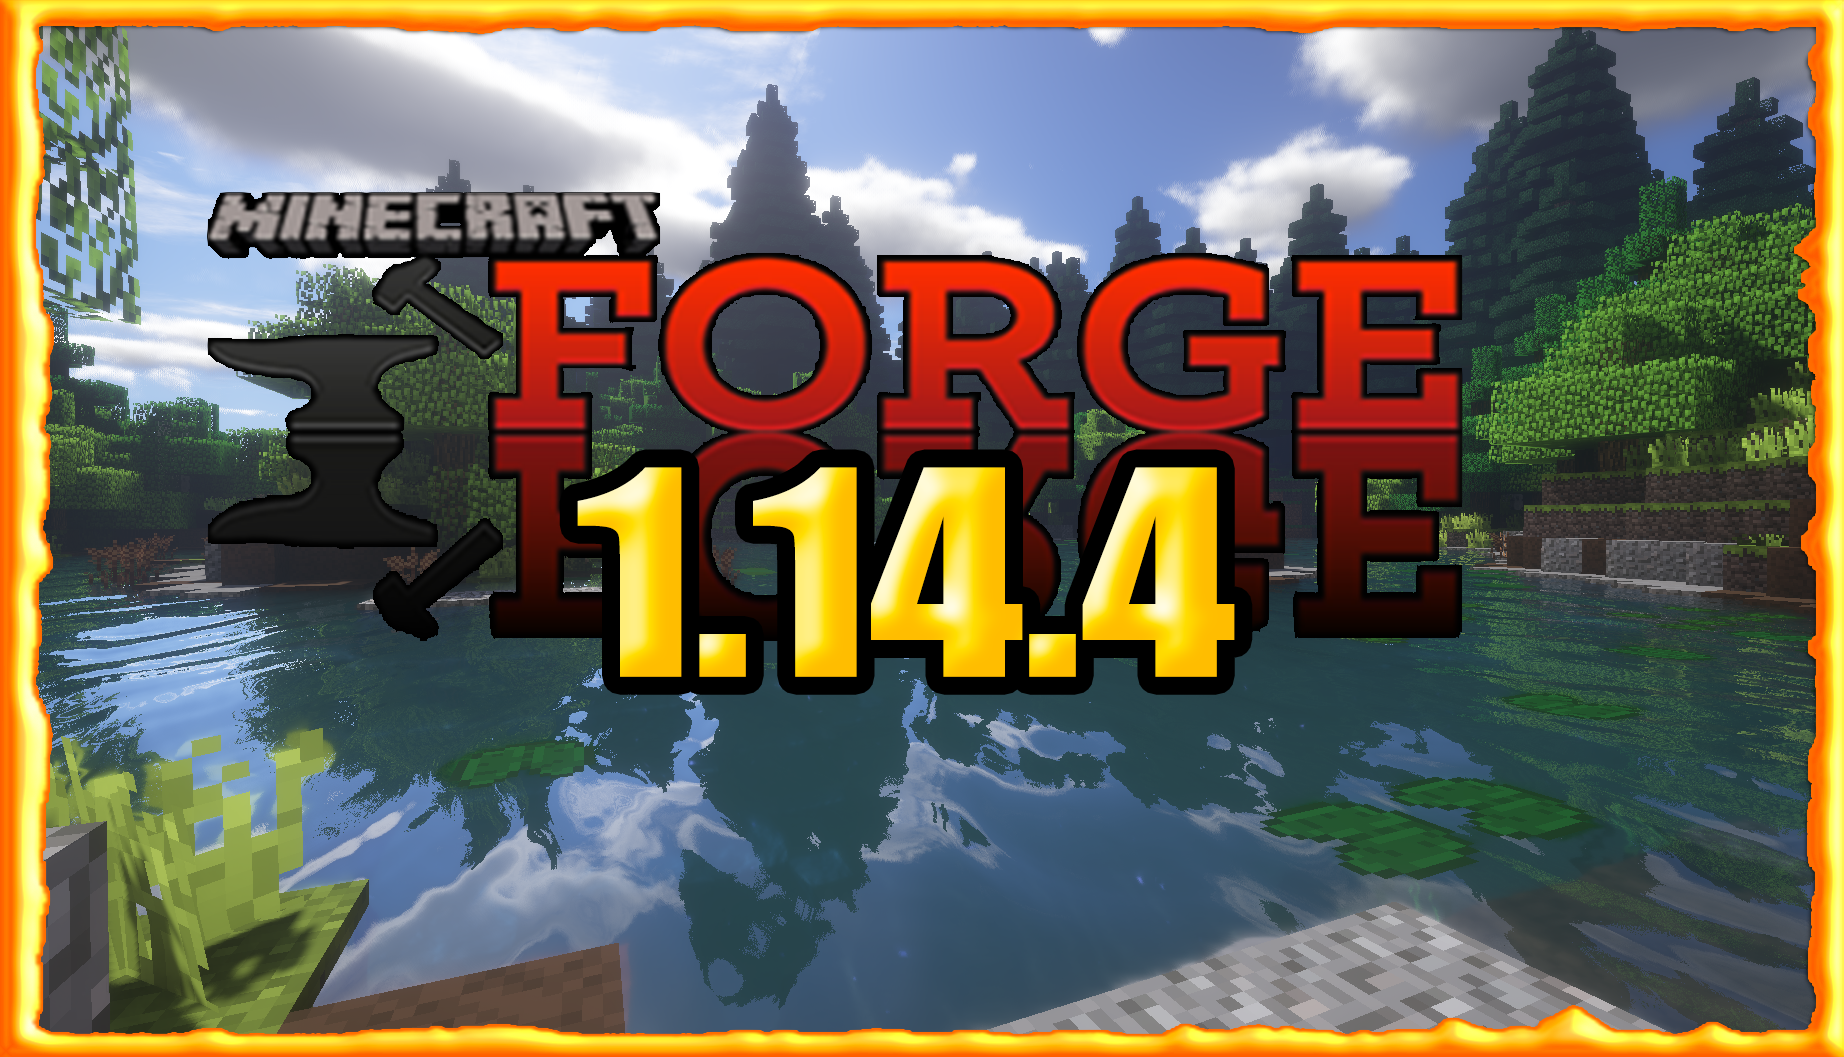 Curse forge 1.16 5